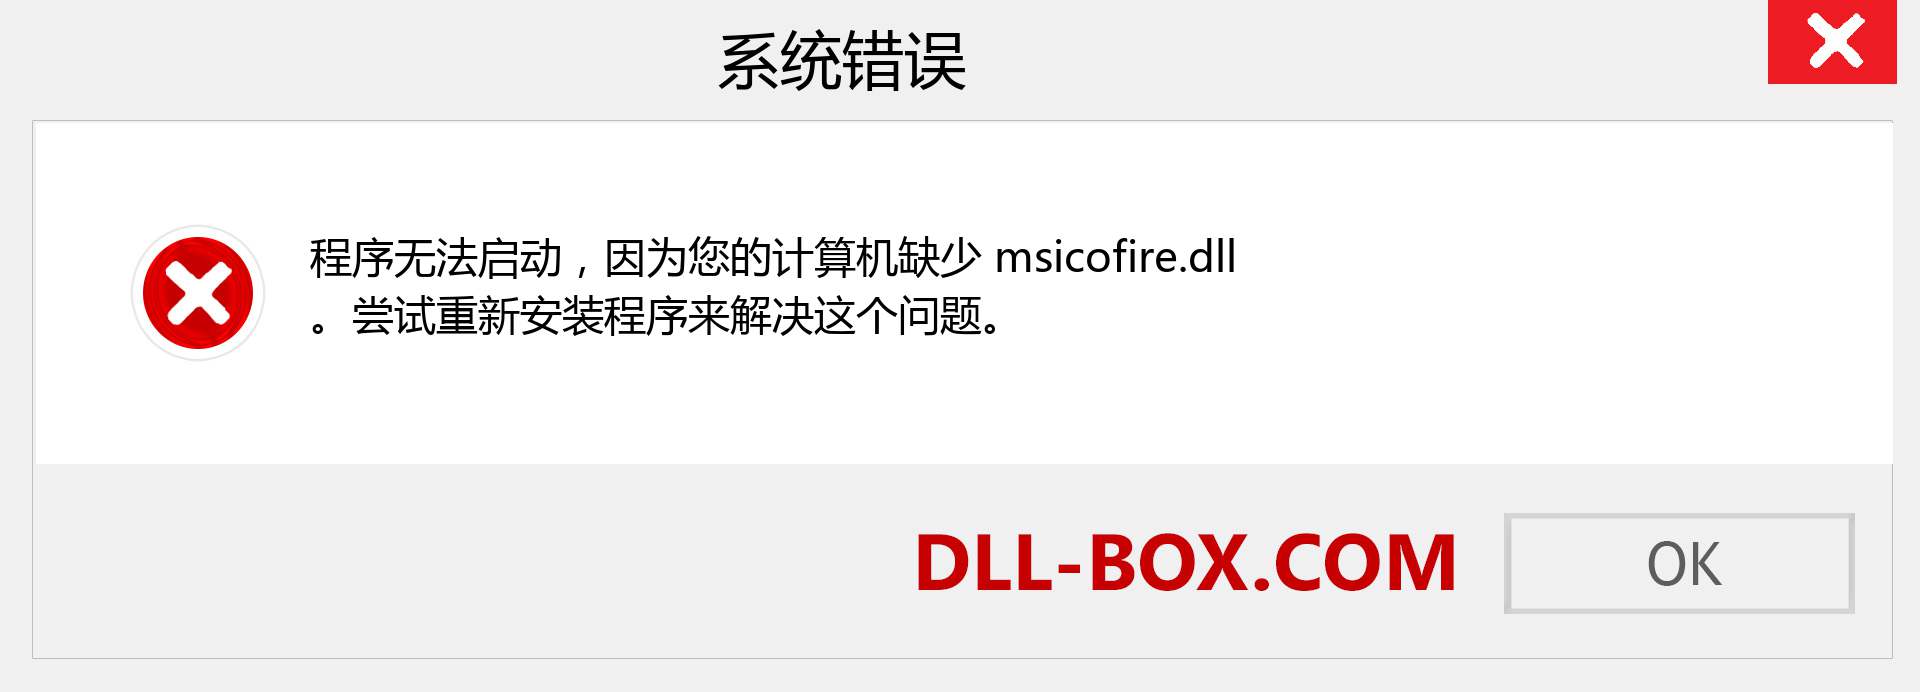 msicofire.dll 文件丢失？。 适用于 Windows 7、8、10 的下载 - 修复 Windows、照片、图像上的 msicofire dll 丢失错误